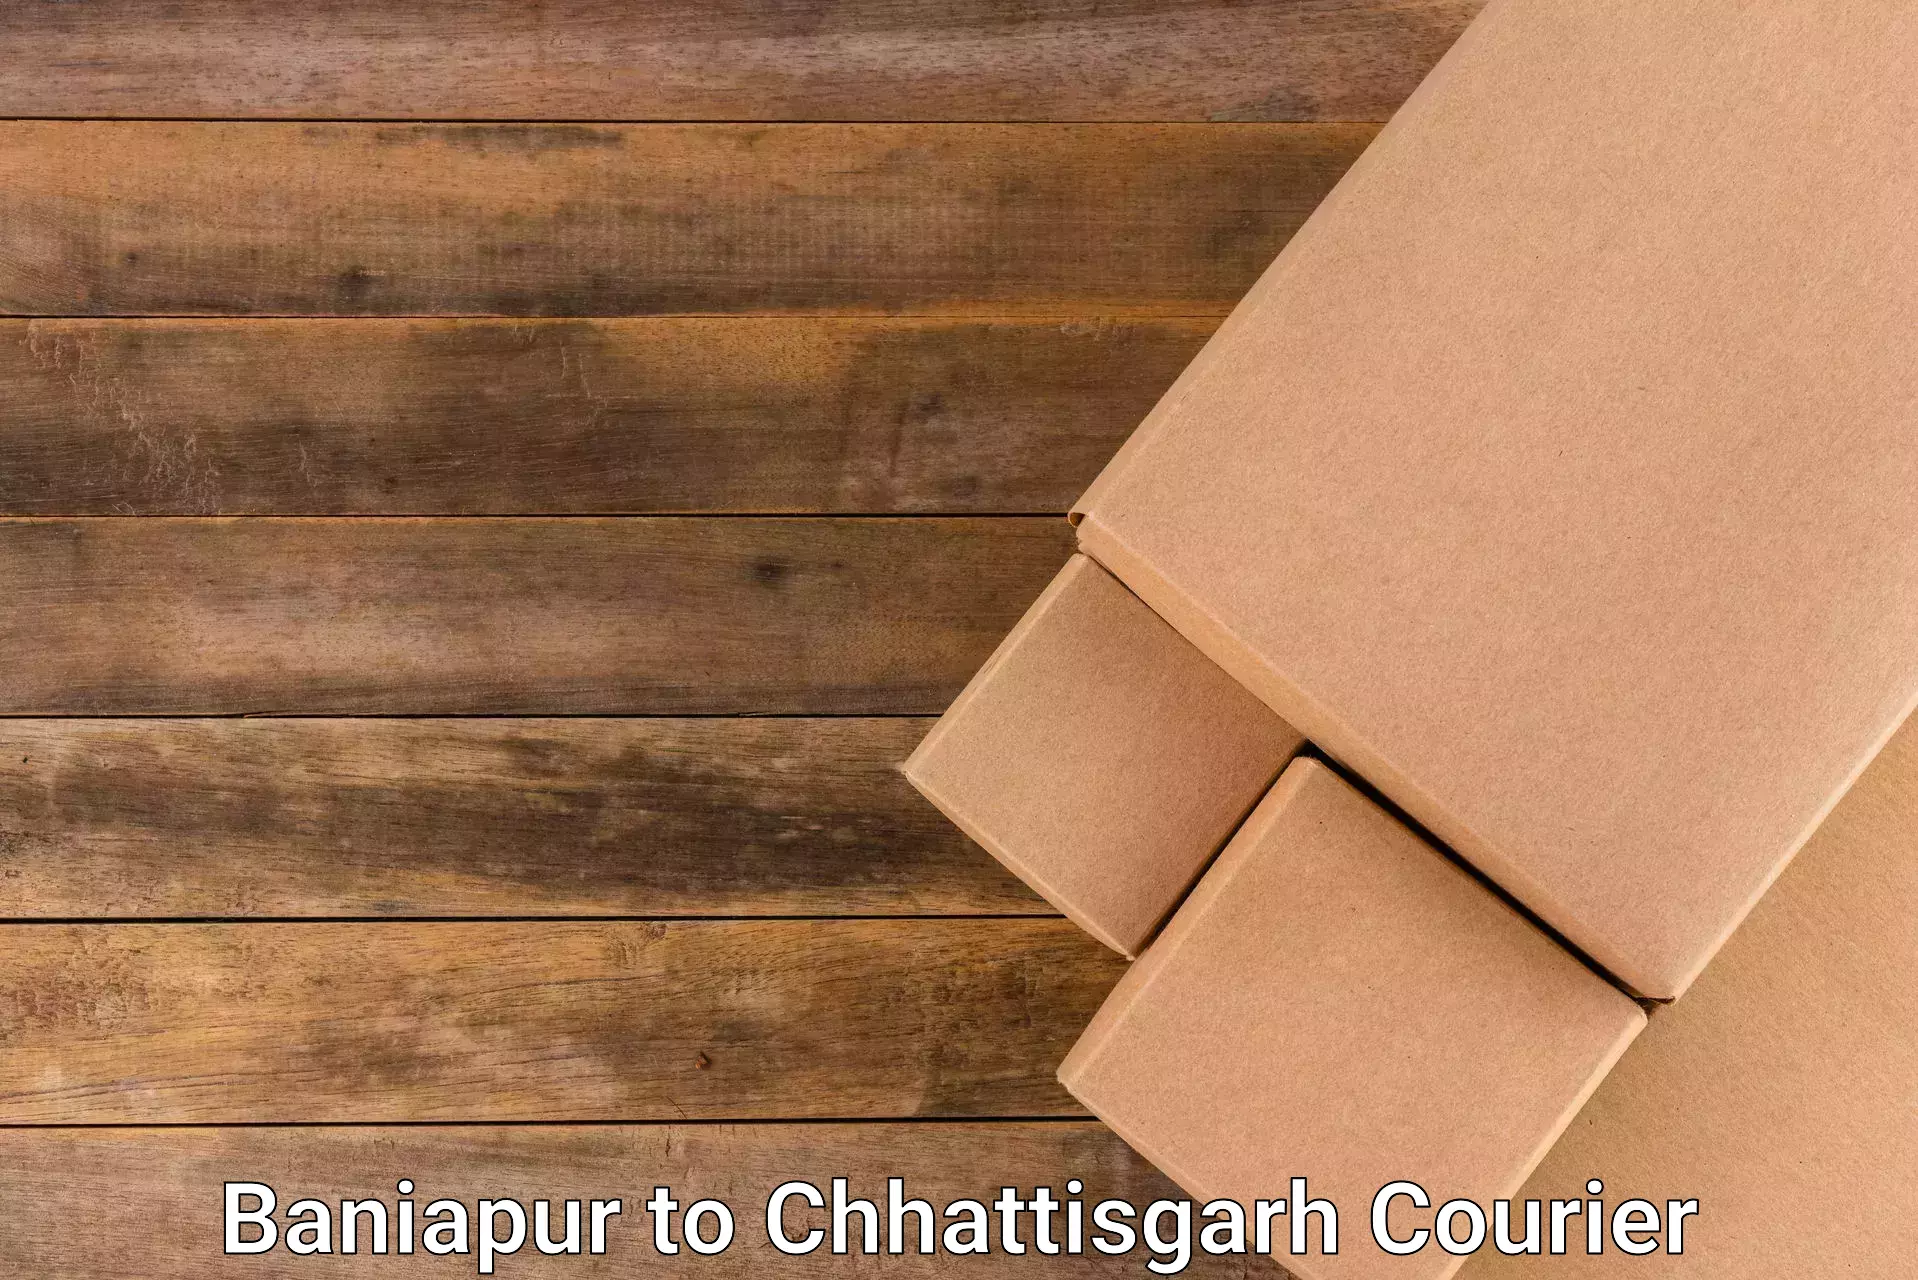 High-capacity parcel service Baniapur to Baikunthpur